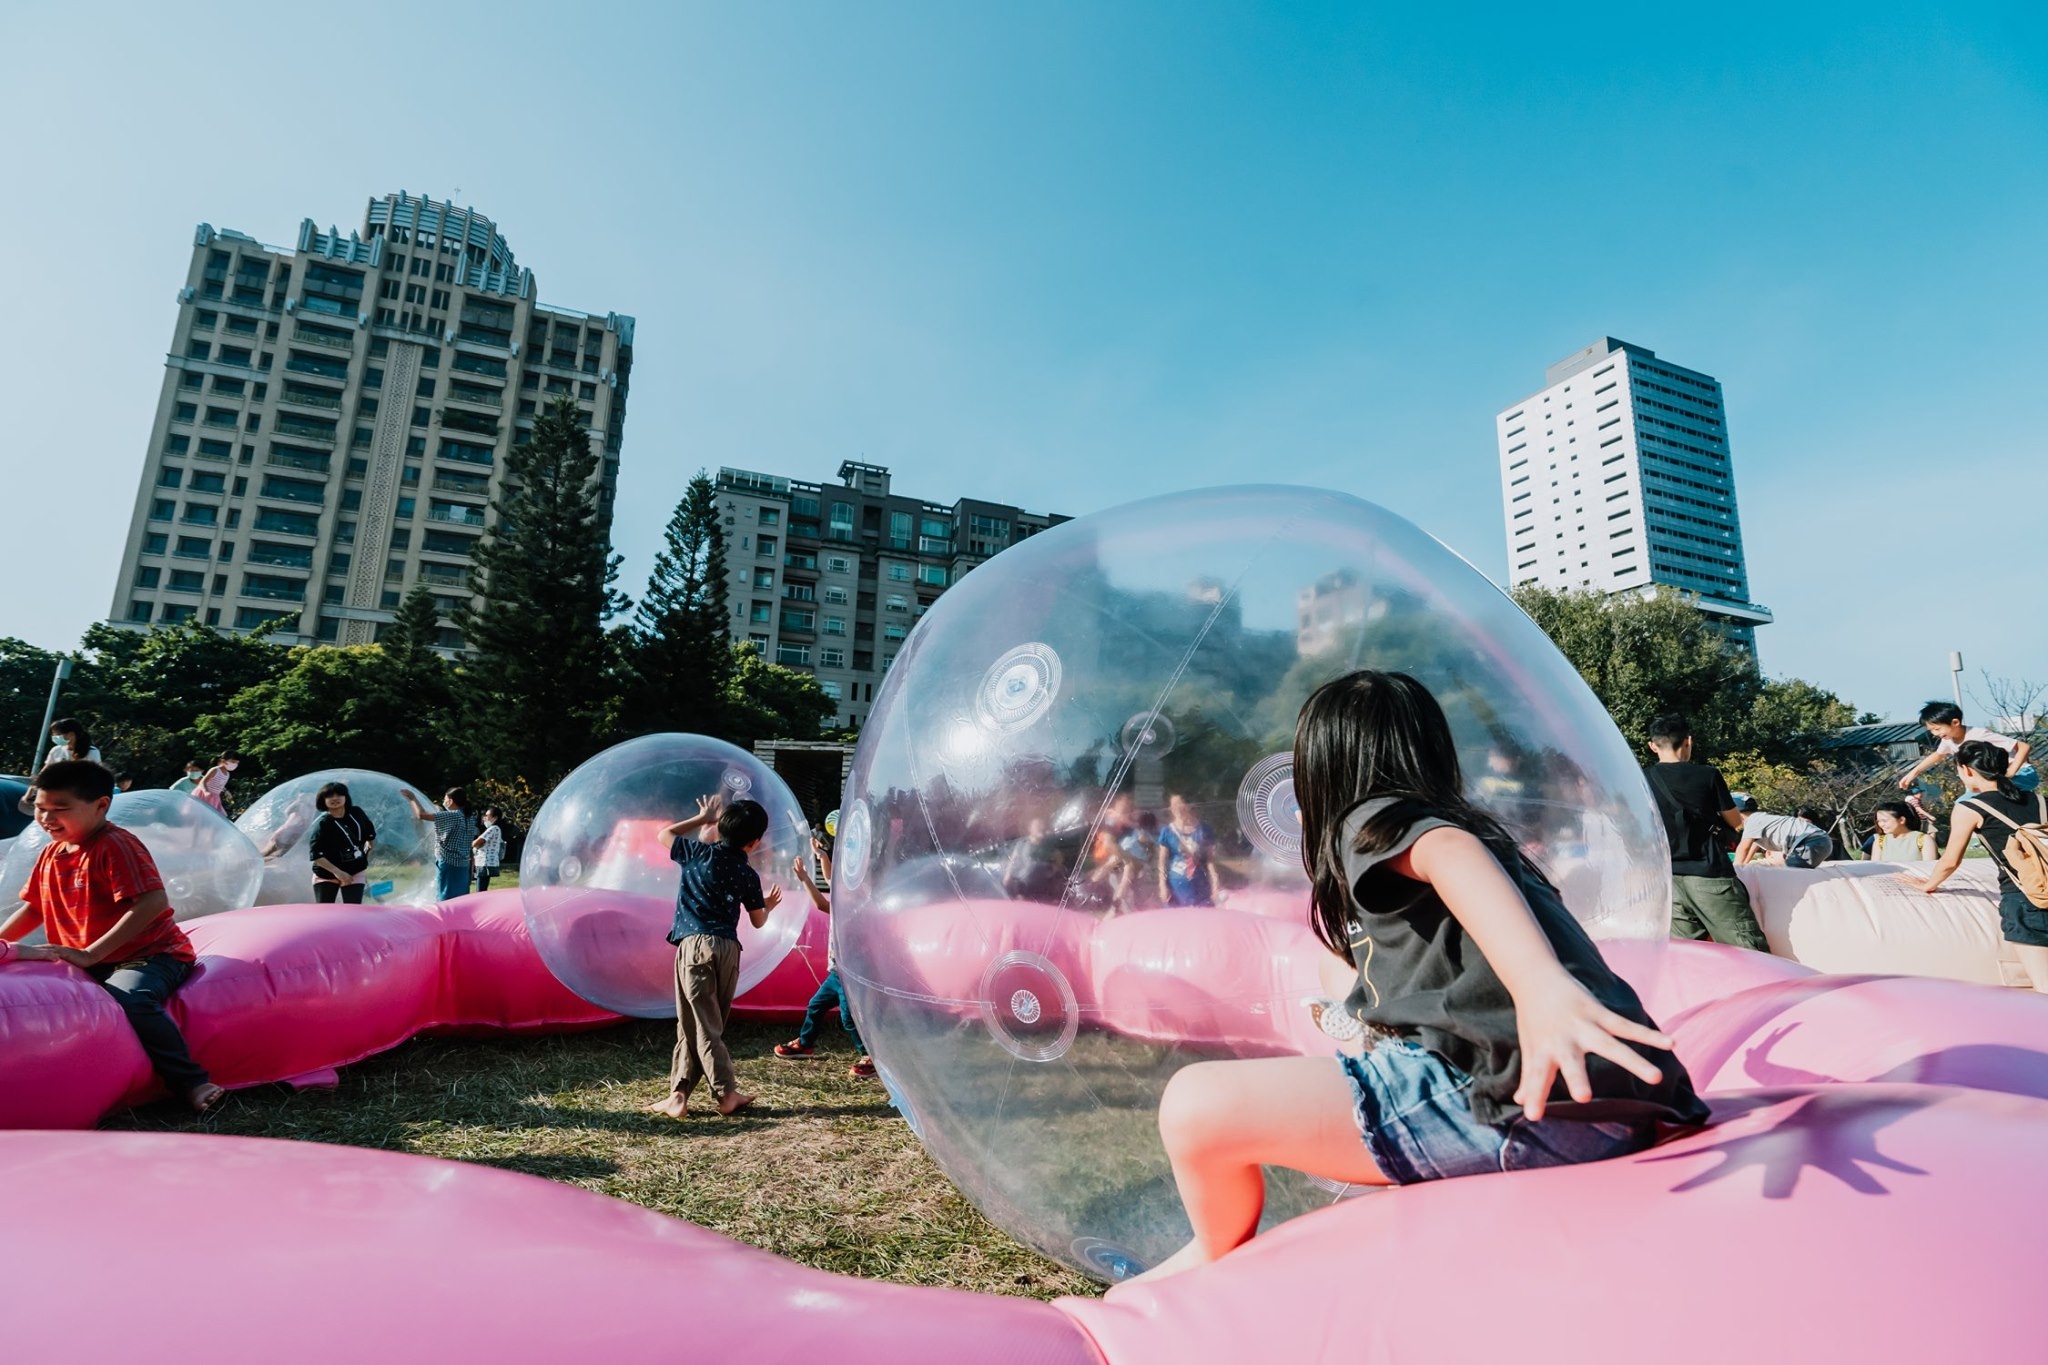 新竹公園圓形廣場的「泡泡遊戲場」，有空飄泡泡球還能玩傳球等。照片提供/衍序規劃設計提供，攝影師Kris Kang